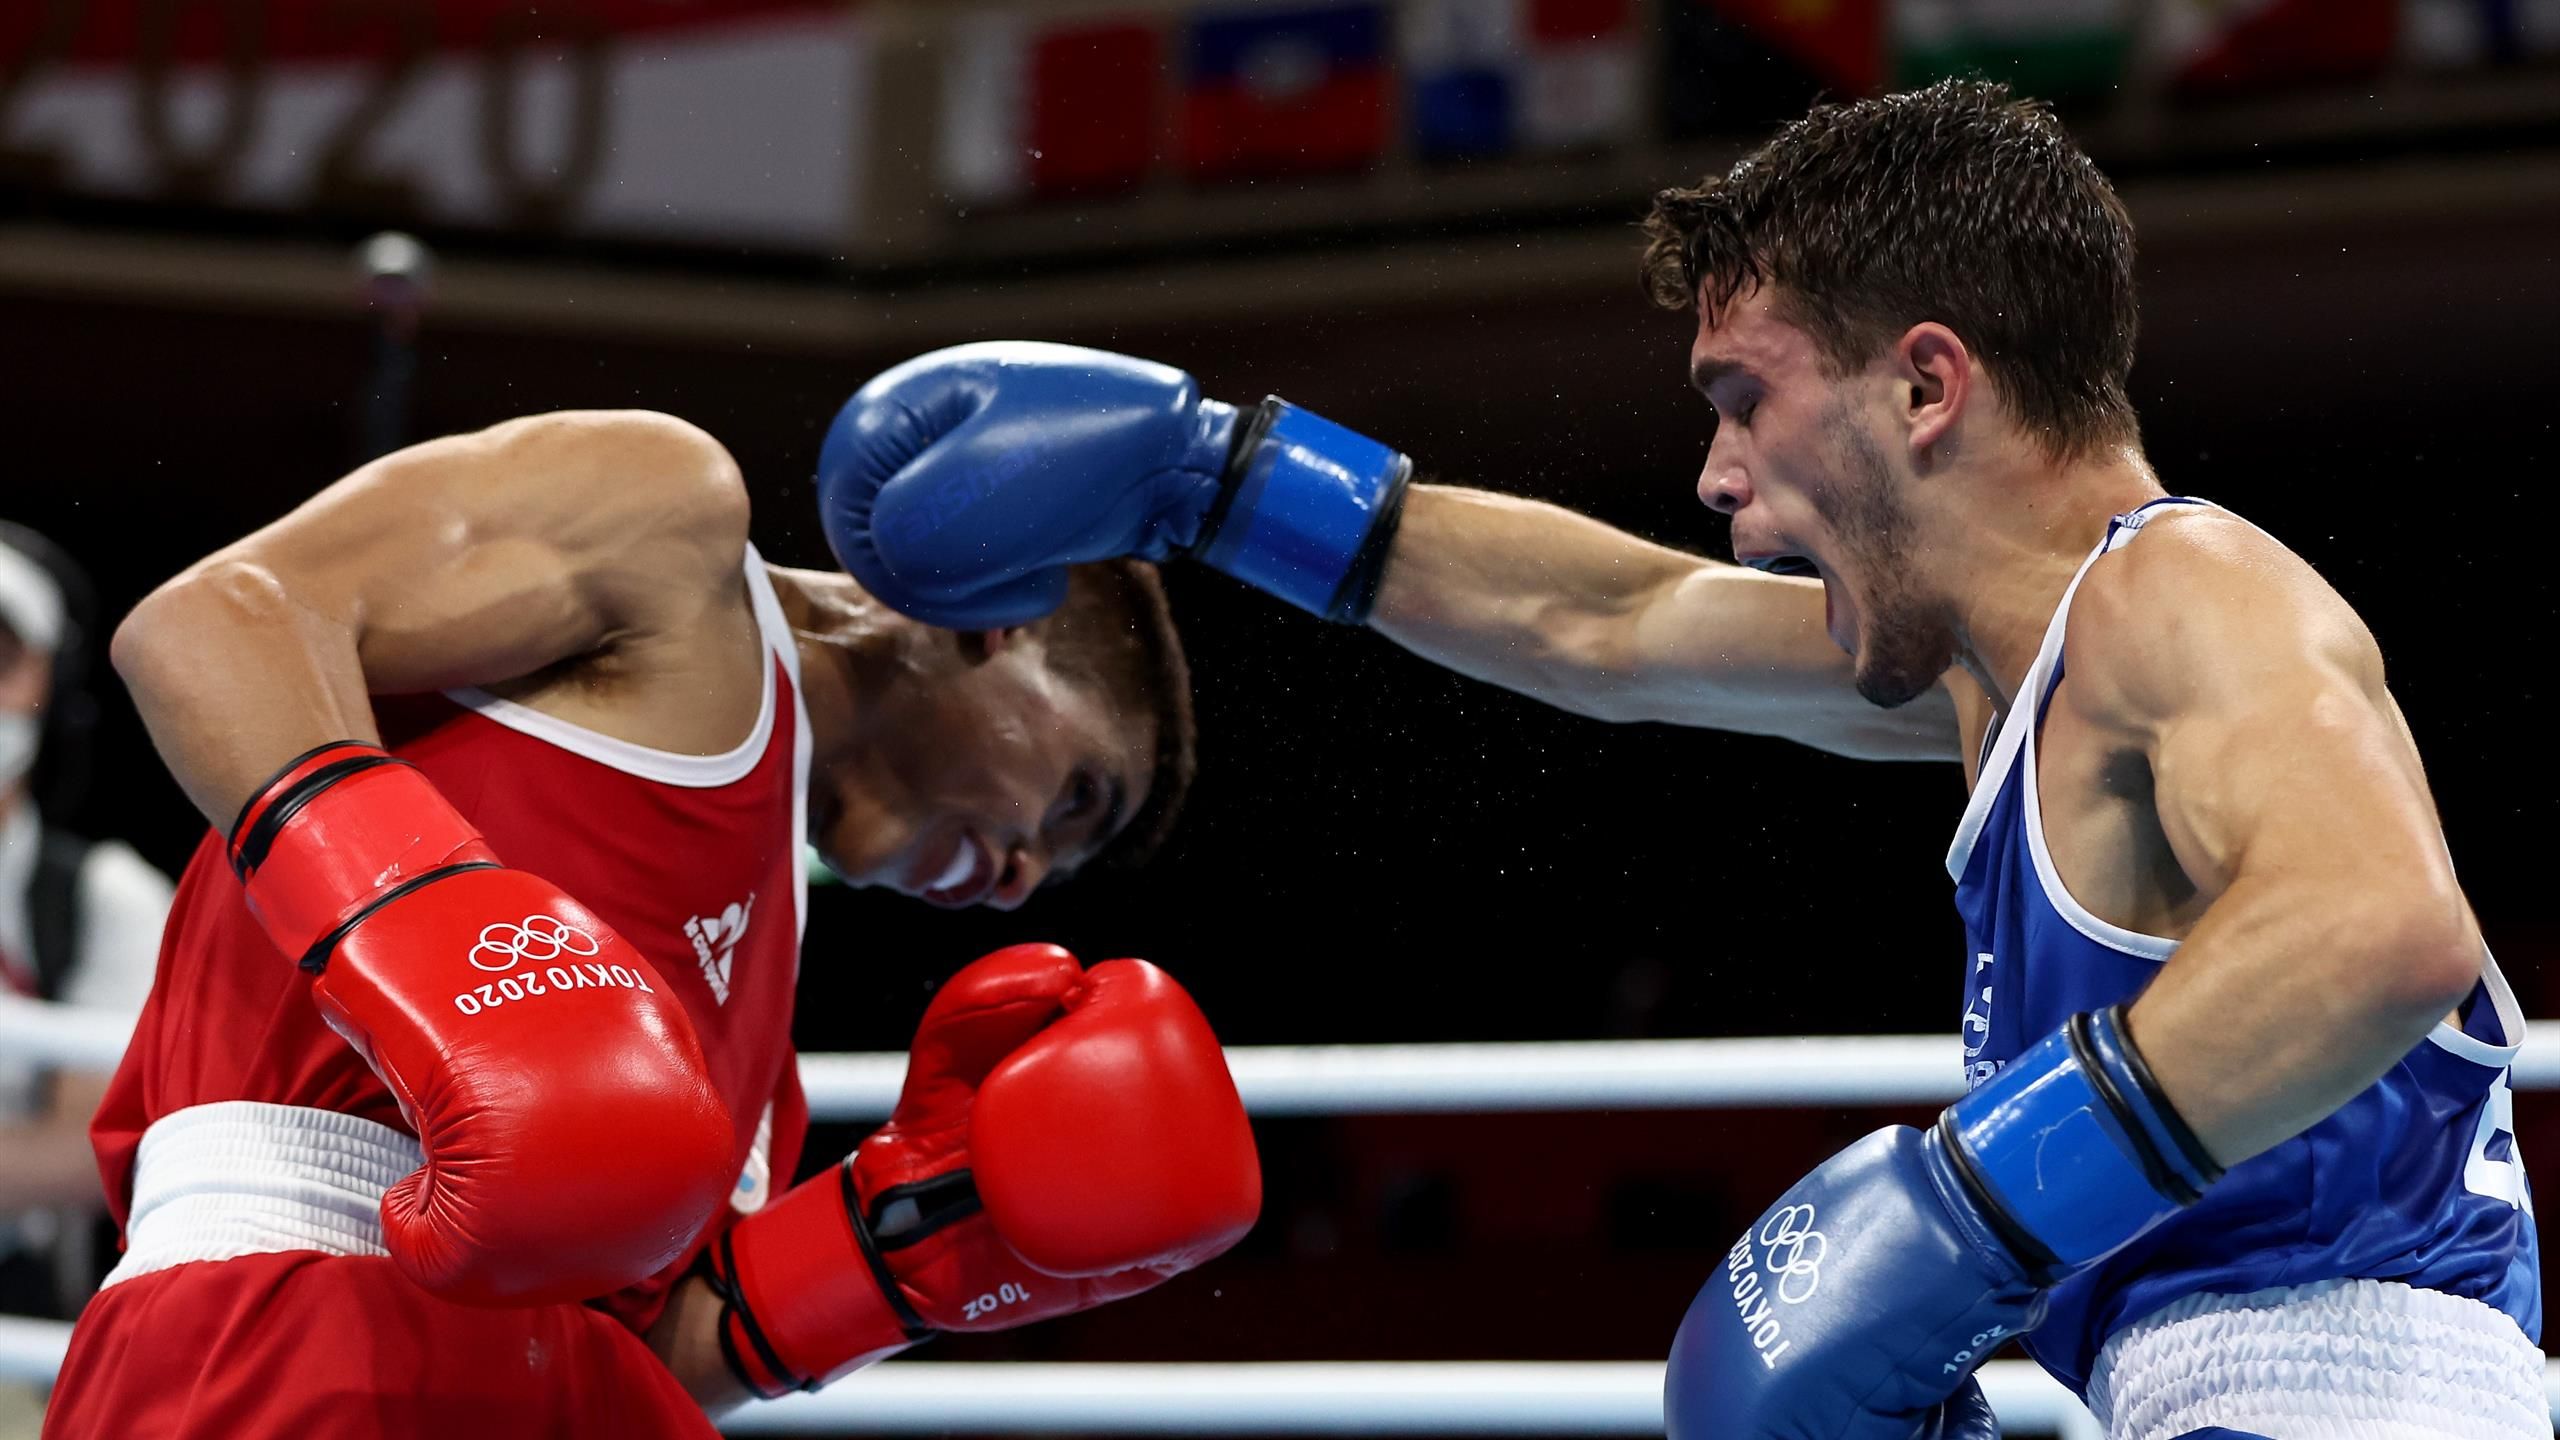 Juegos Olímpicos 2020, Boxeo | Gabriel Escobar se clasifica para octavos  tras un gran combate - Boxeo vídeo - Eurosport